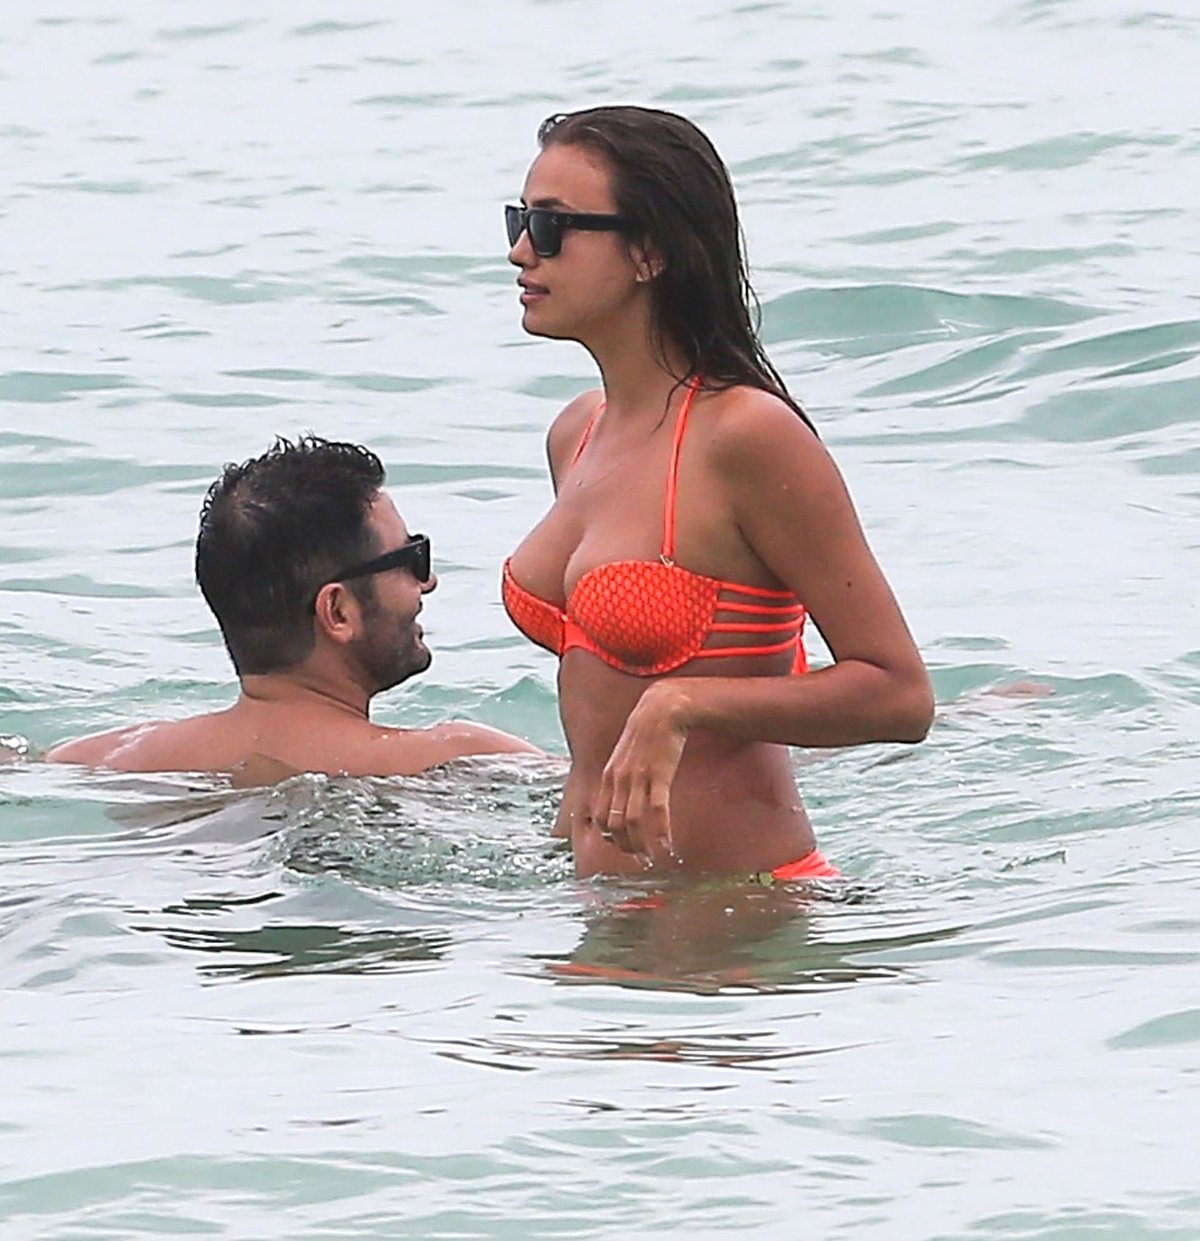 Ronaldova Irina si vyrazila na dovolenou s neznámým mužem, v moři si evidentně užívali spoustu legrace...